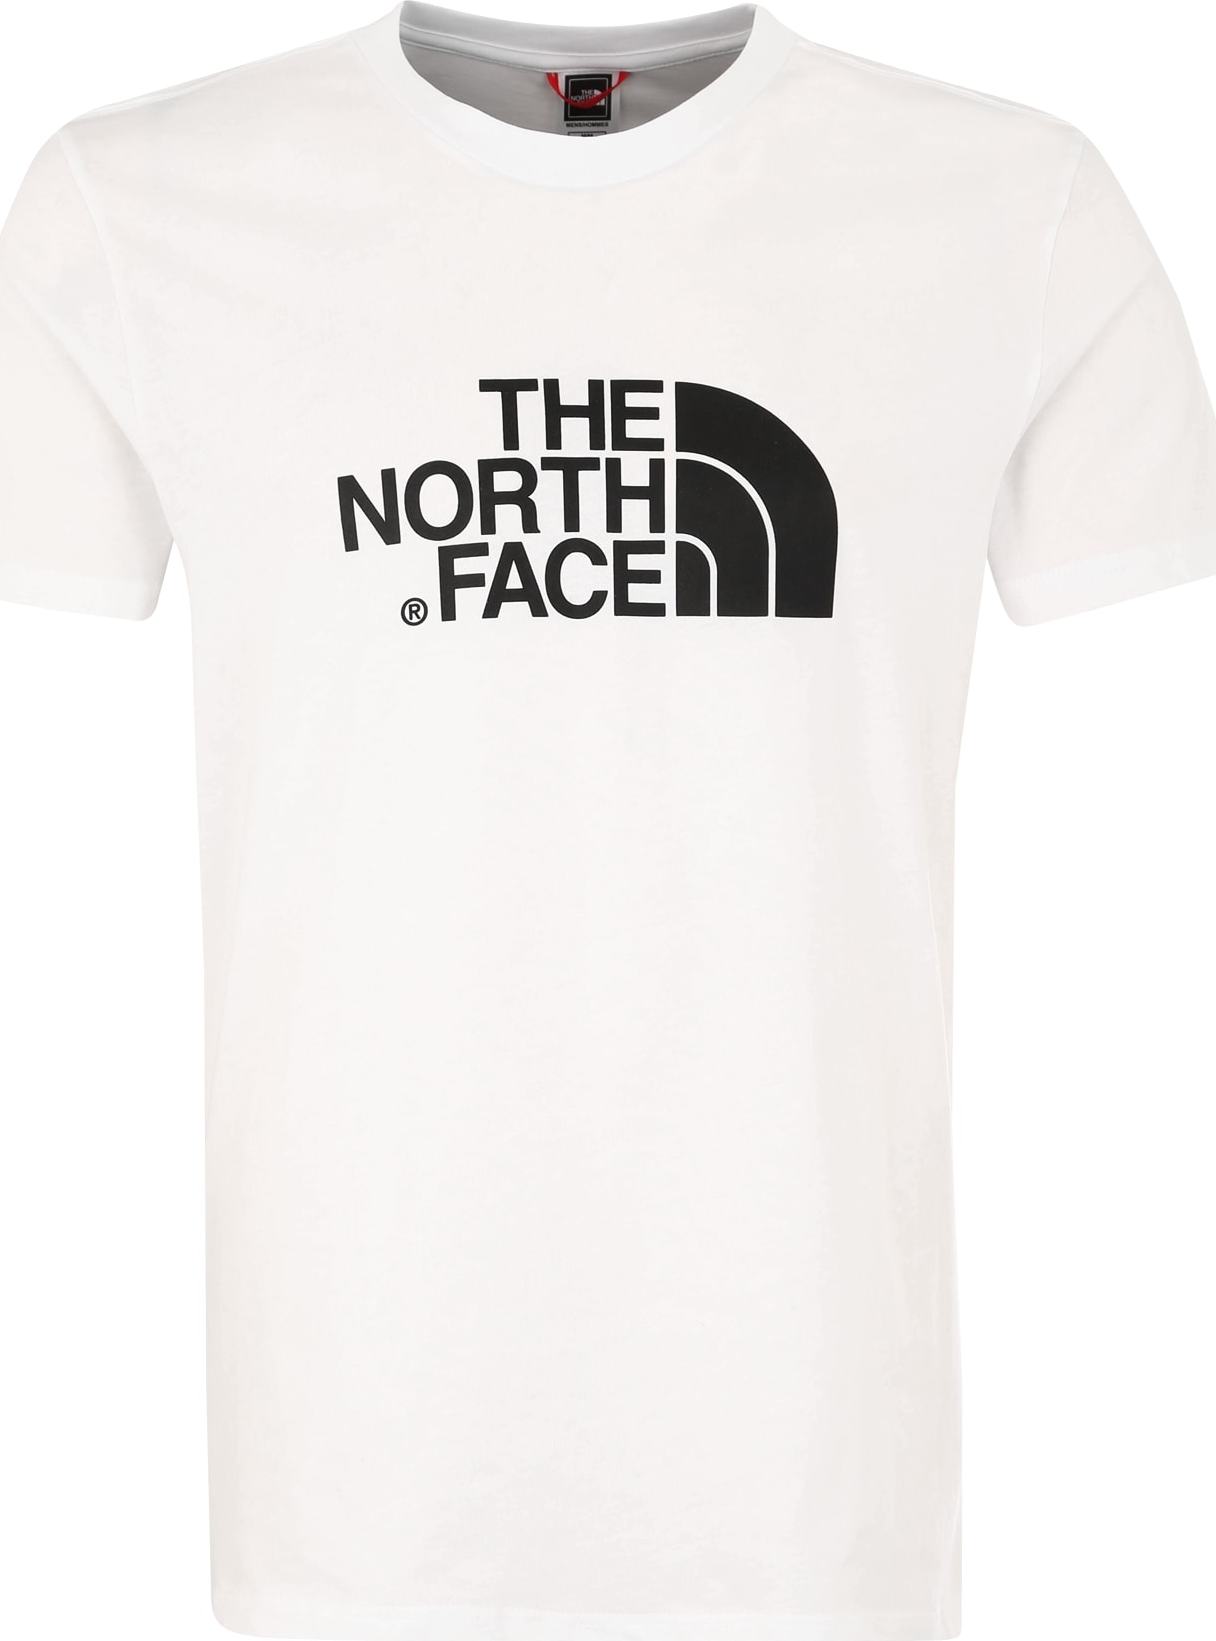 Tričko 'Easy' The North Face černá / bílá